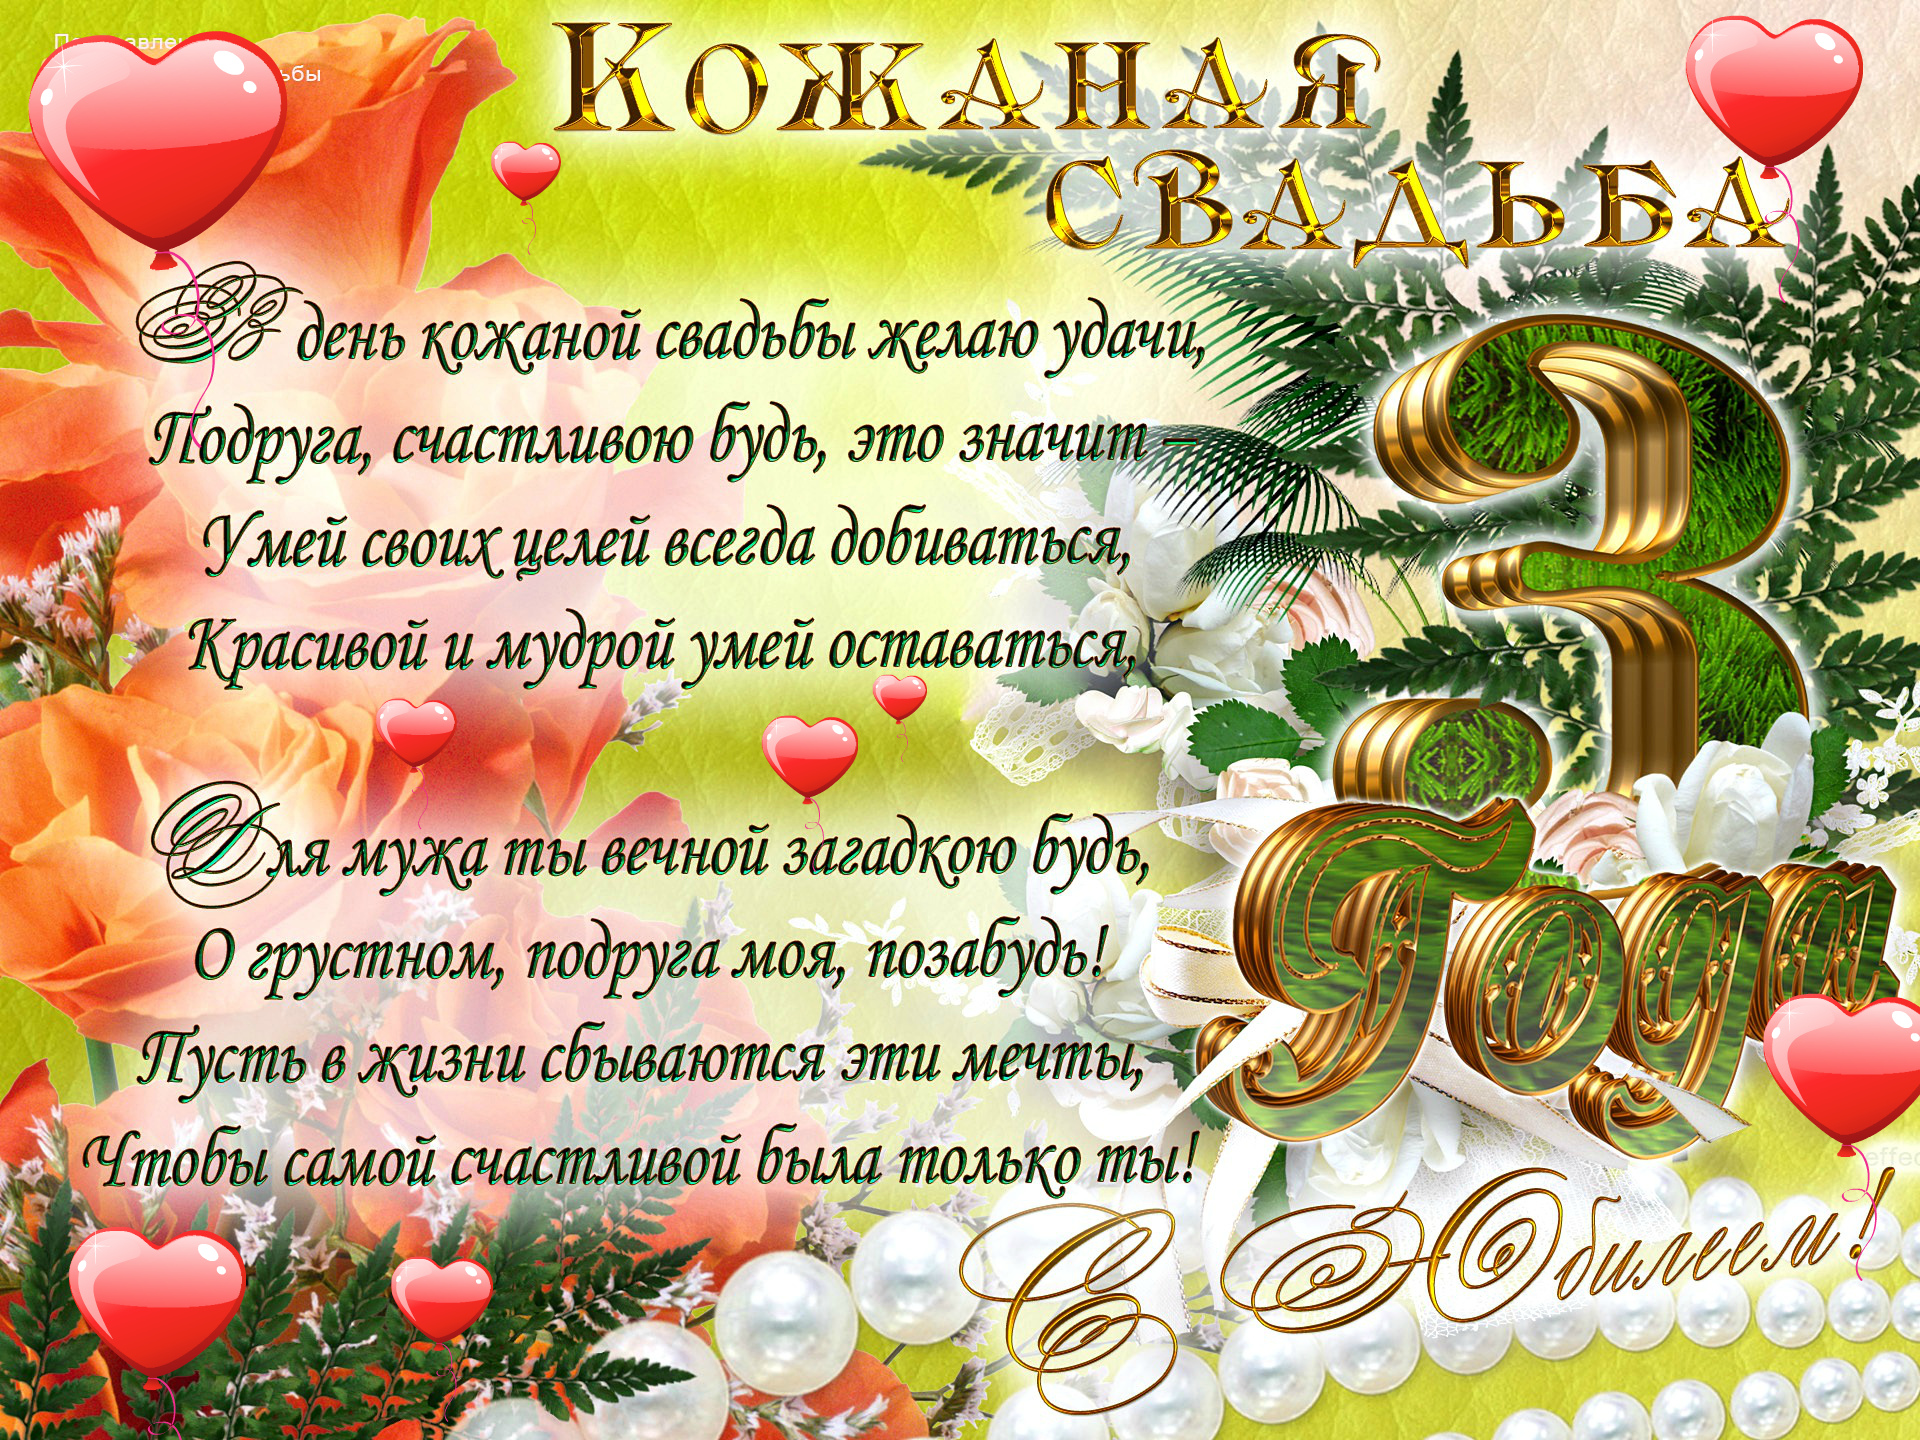 Поздравления с годовщиной свадьбы (3 года) кожаная свадьба — 6 поздравлений — stost.ru